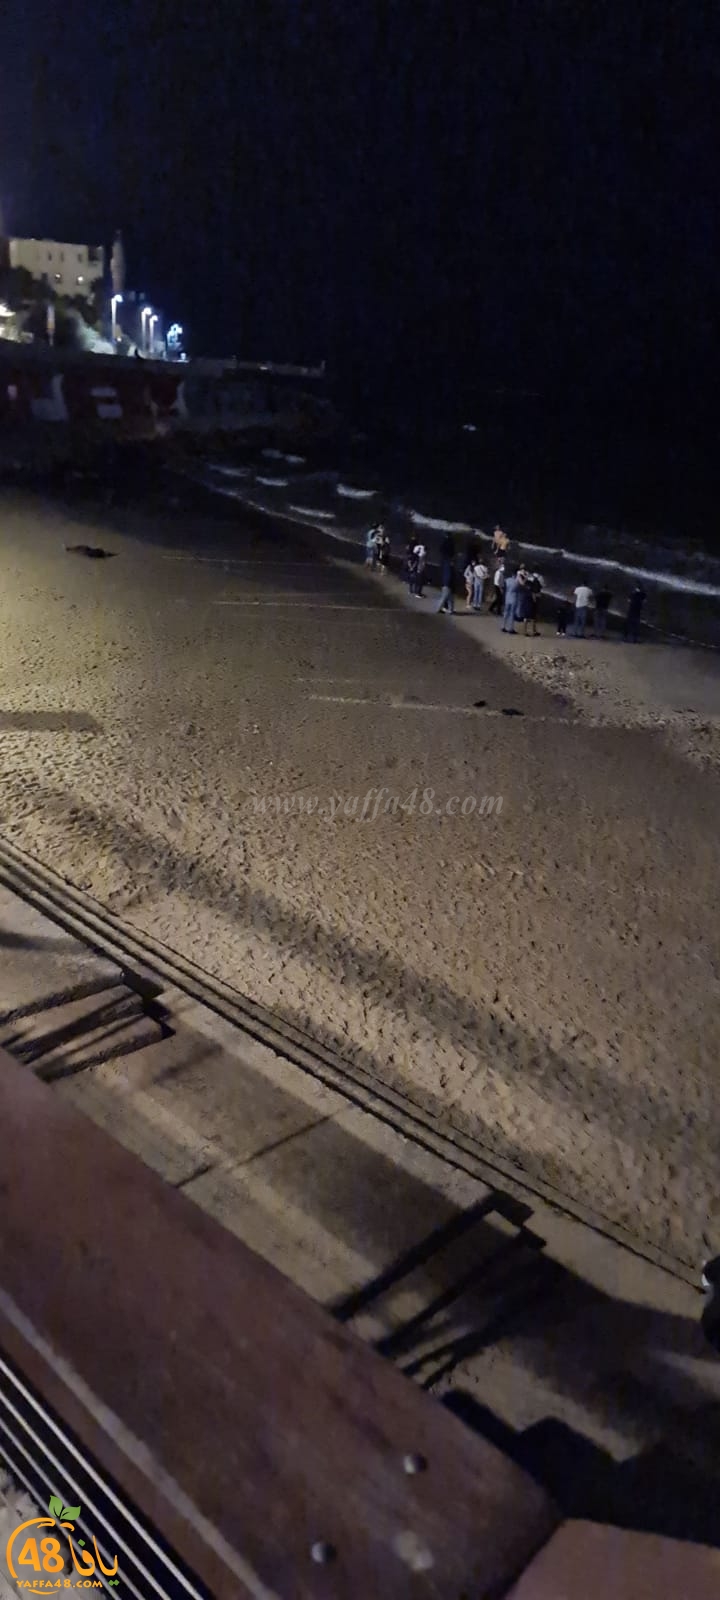  بعد منتصف الليلة - غرق شخص على شاطئ بحر يافا